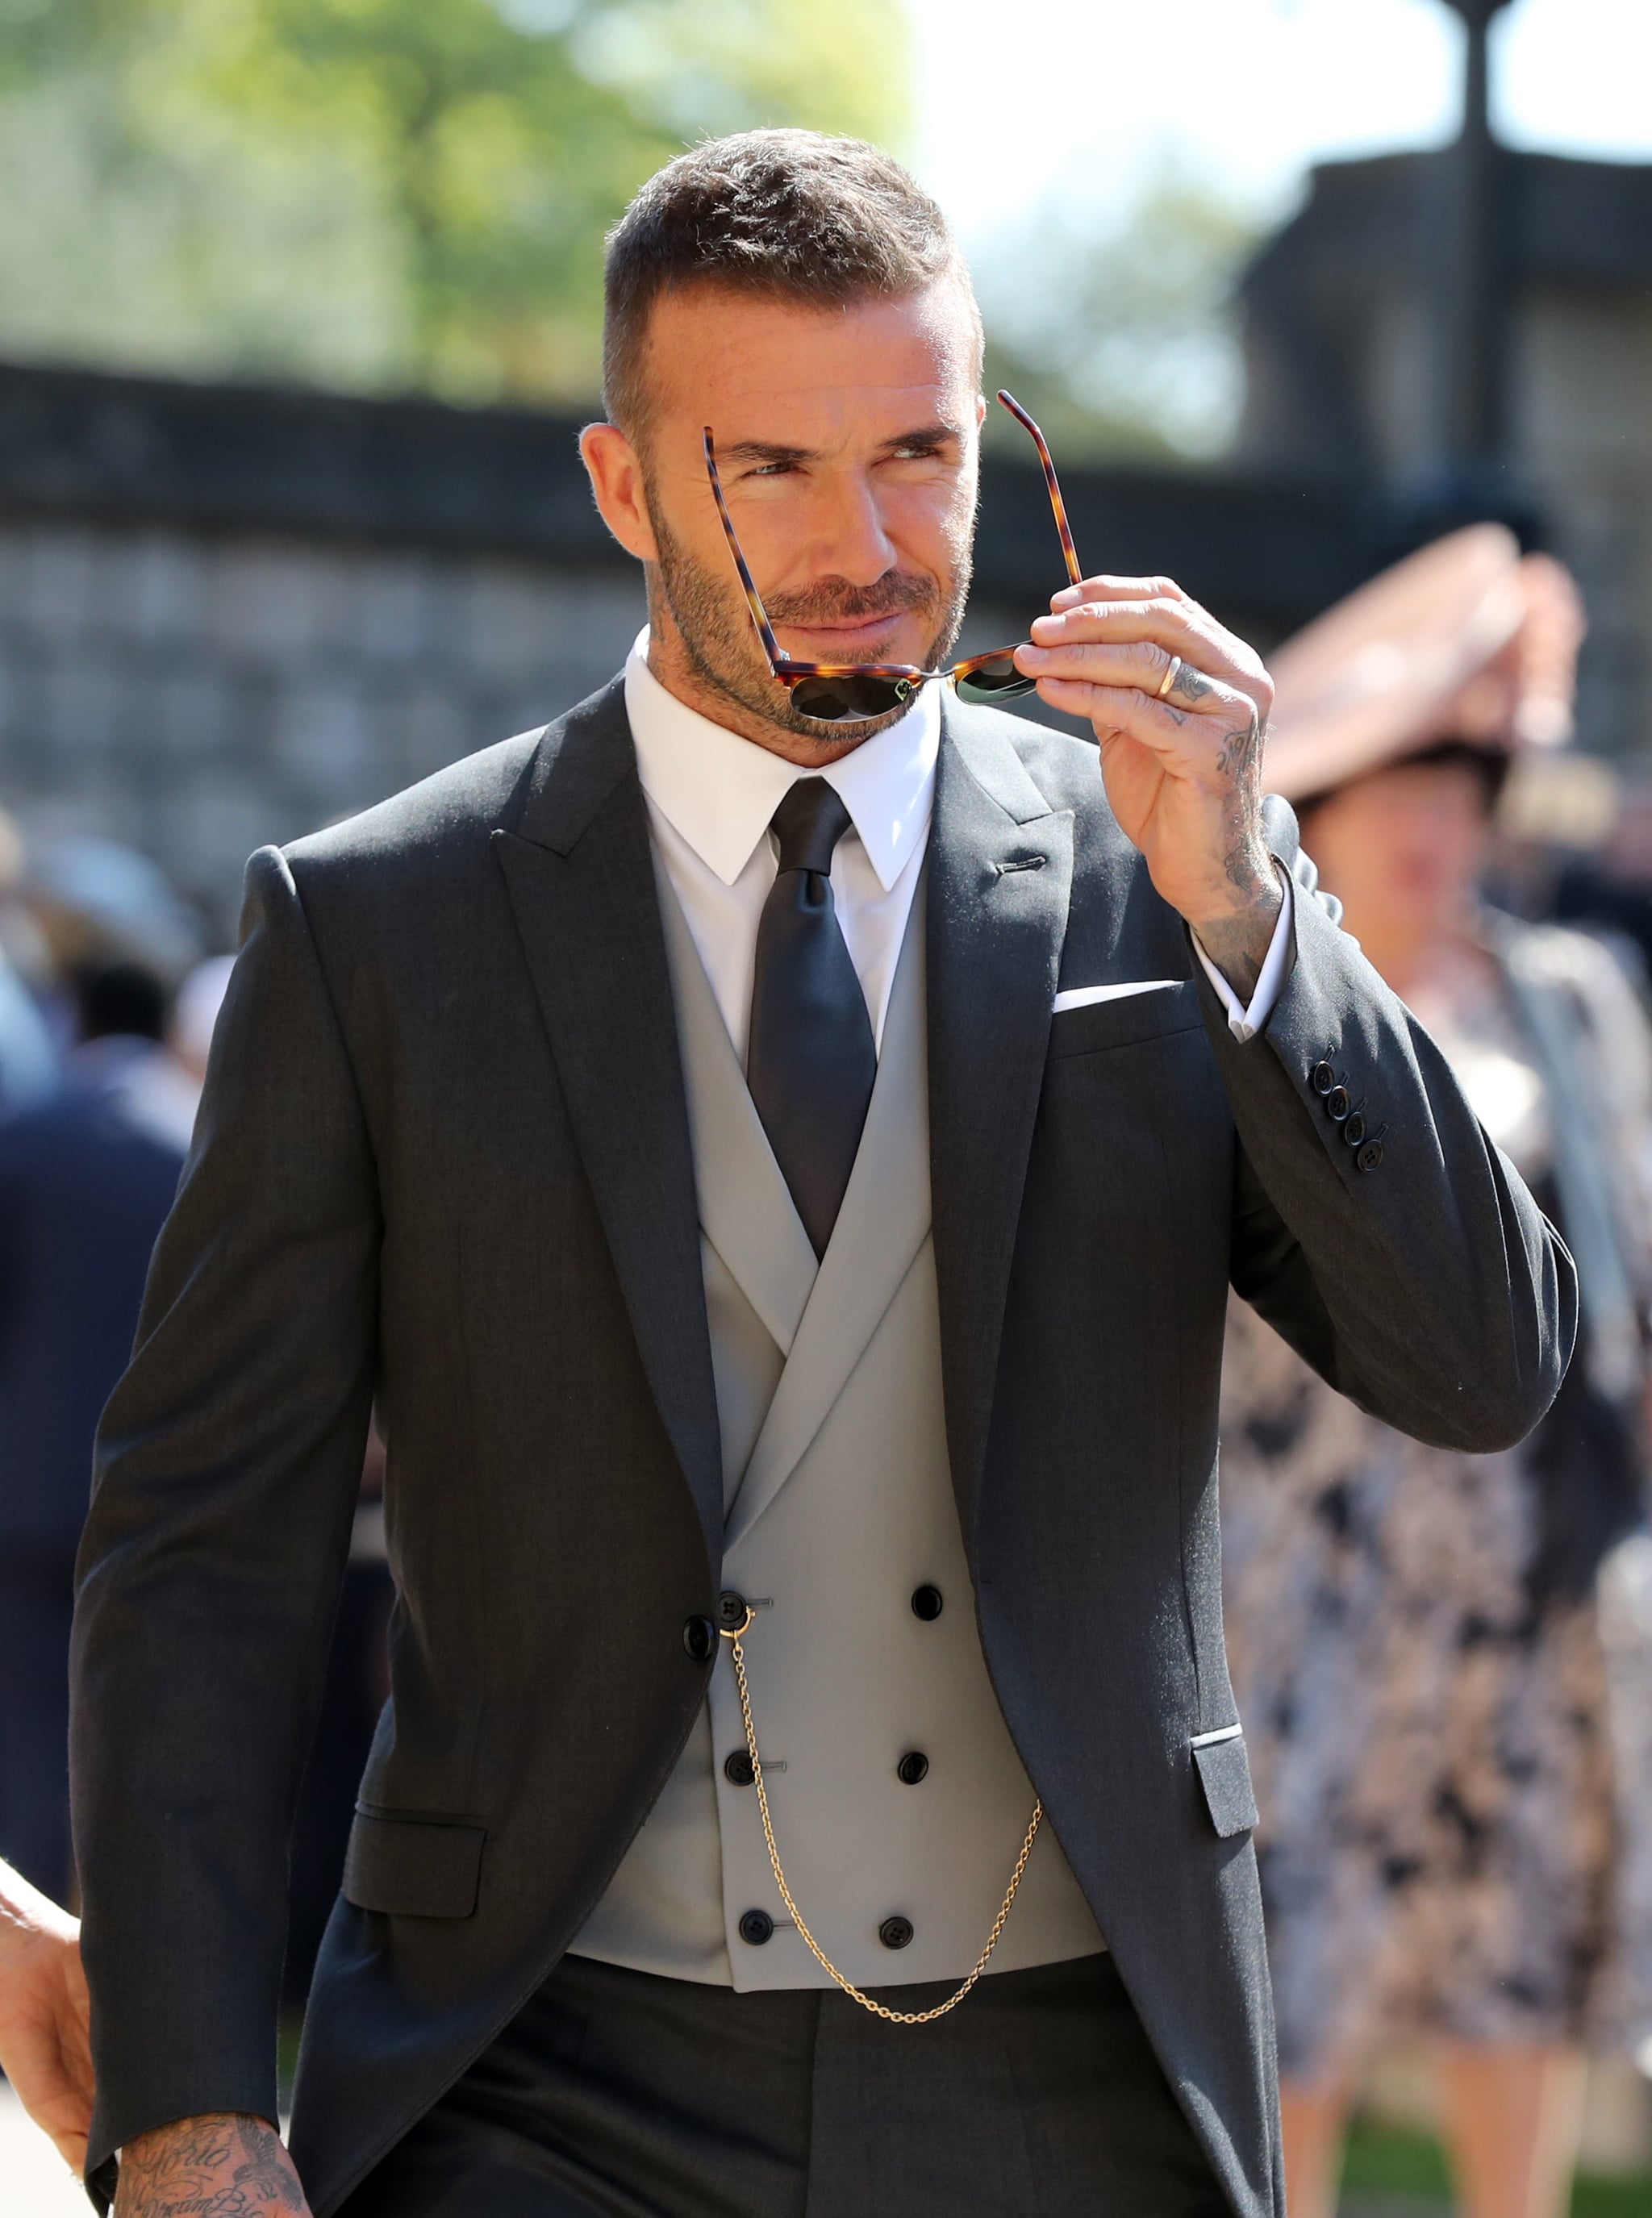 David Beckham At Royal Wedding 18 Pictures Popsugar Celebrity